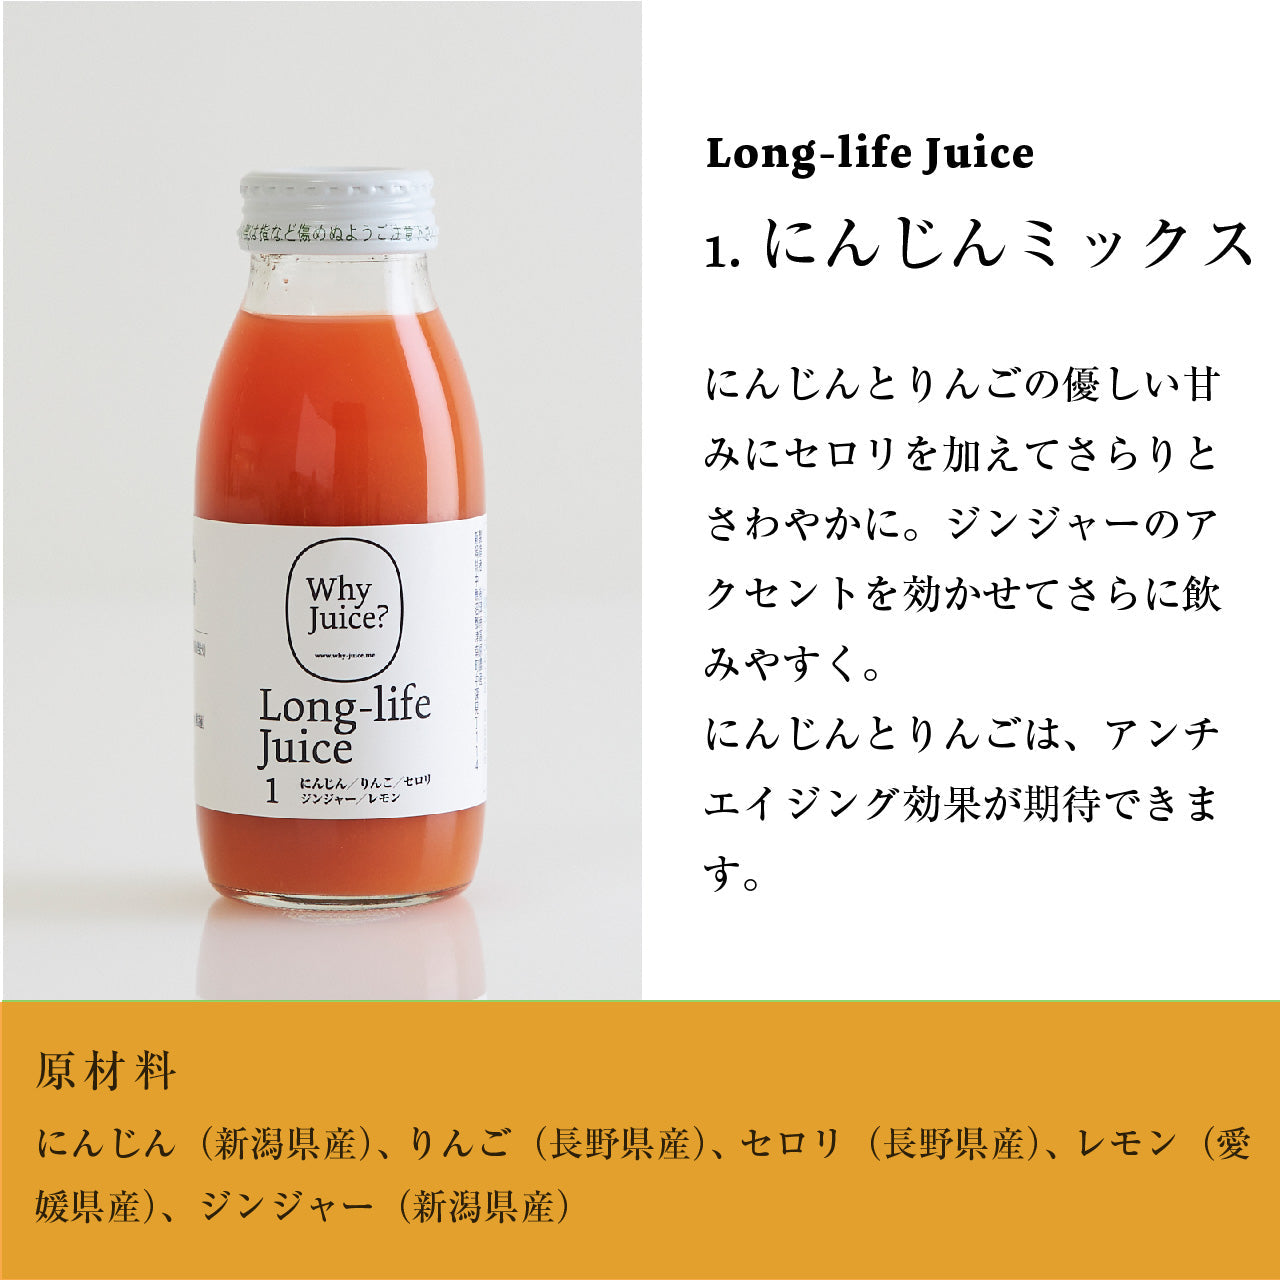 【無添加ジュース】Long-life Juice 6本ギフトボックス(定番3種類セット)